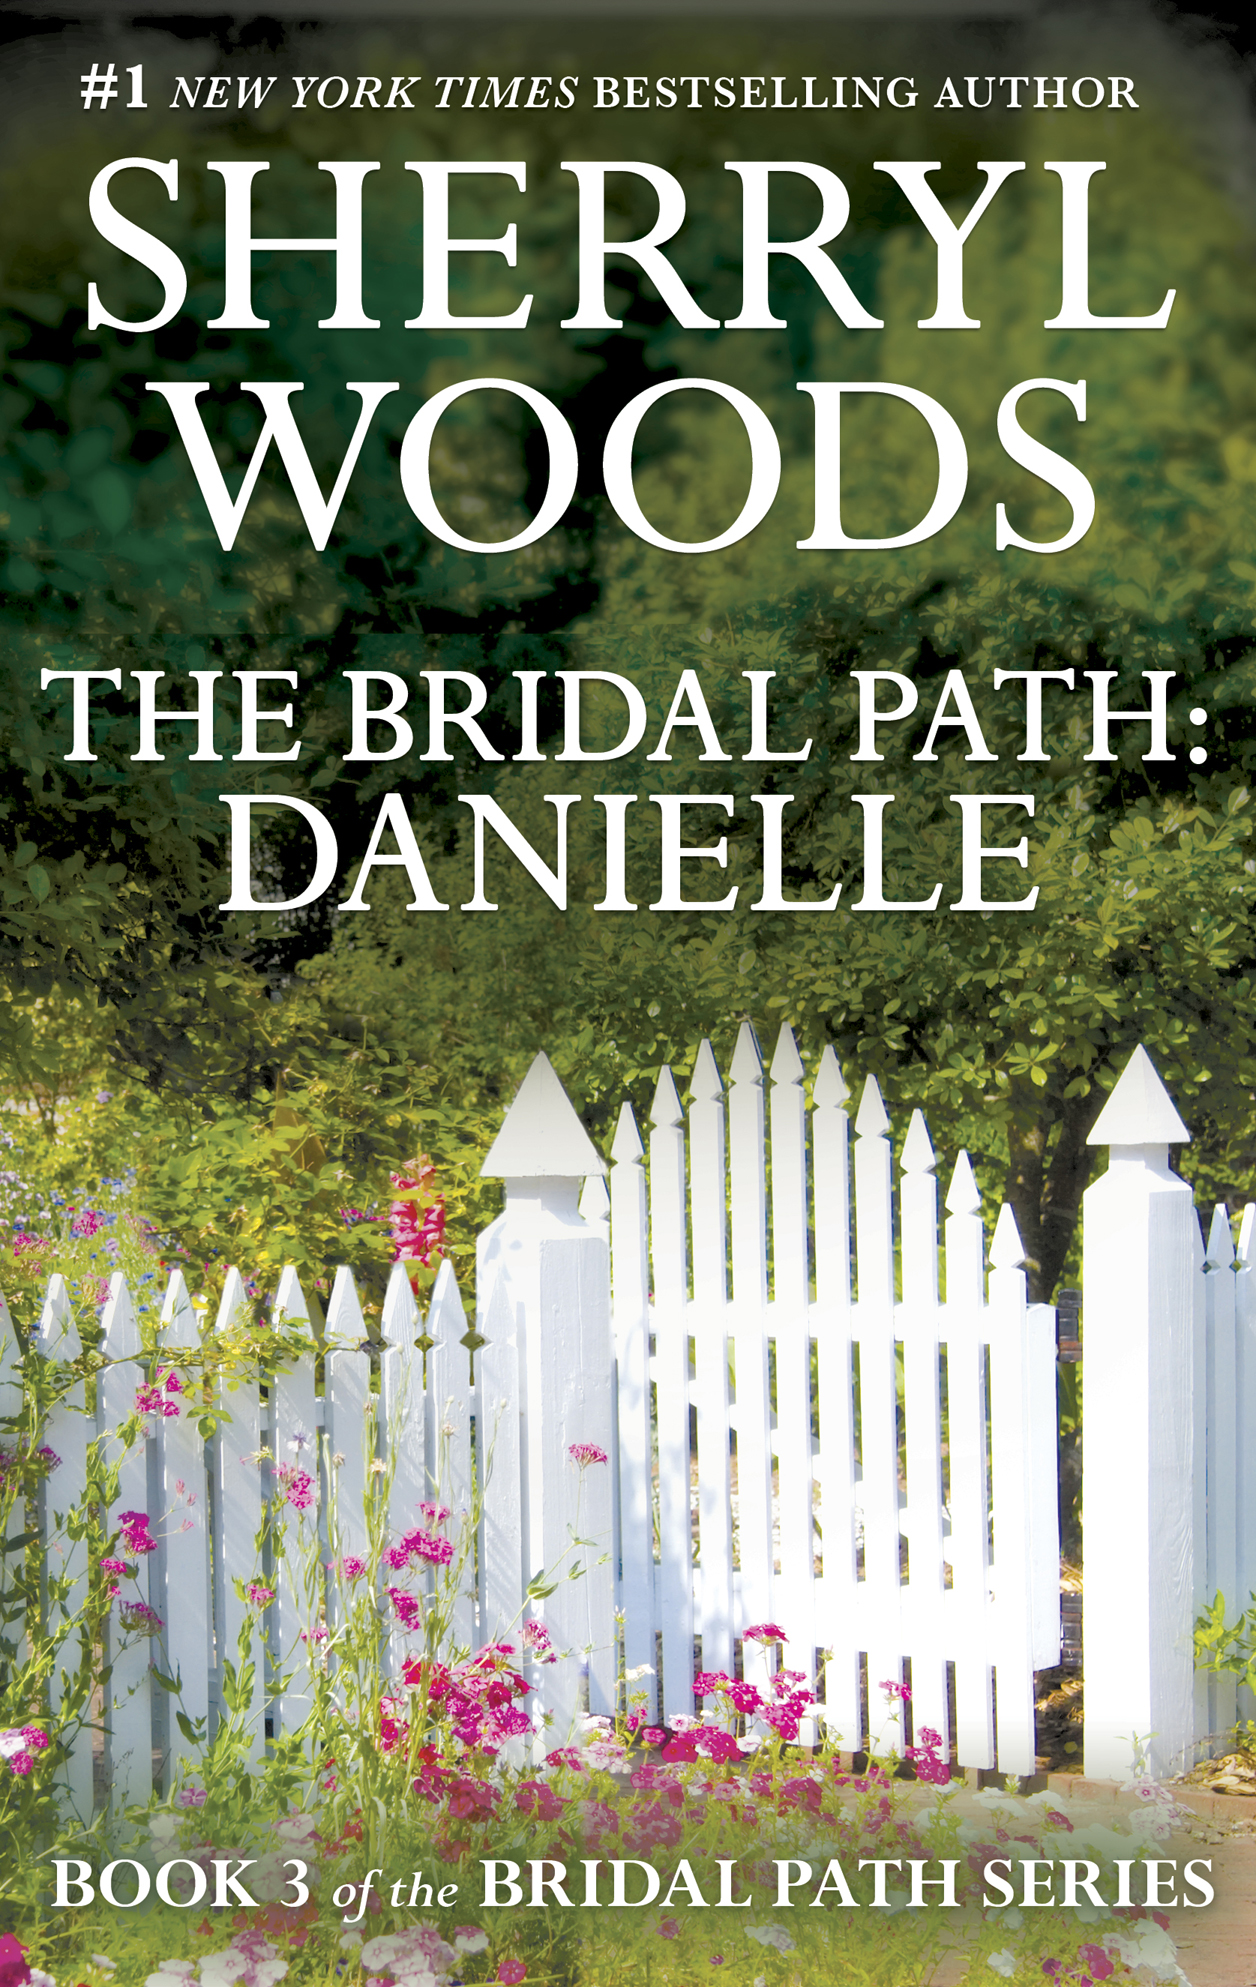 The Bridal Path: Danielle (1995)